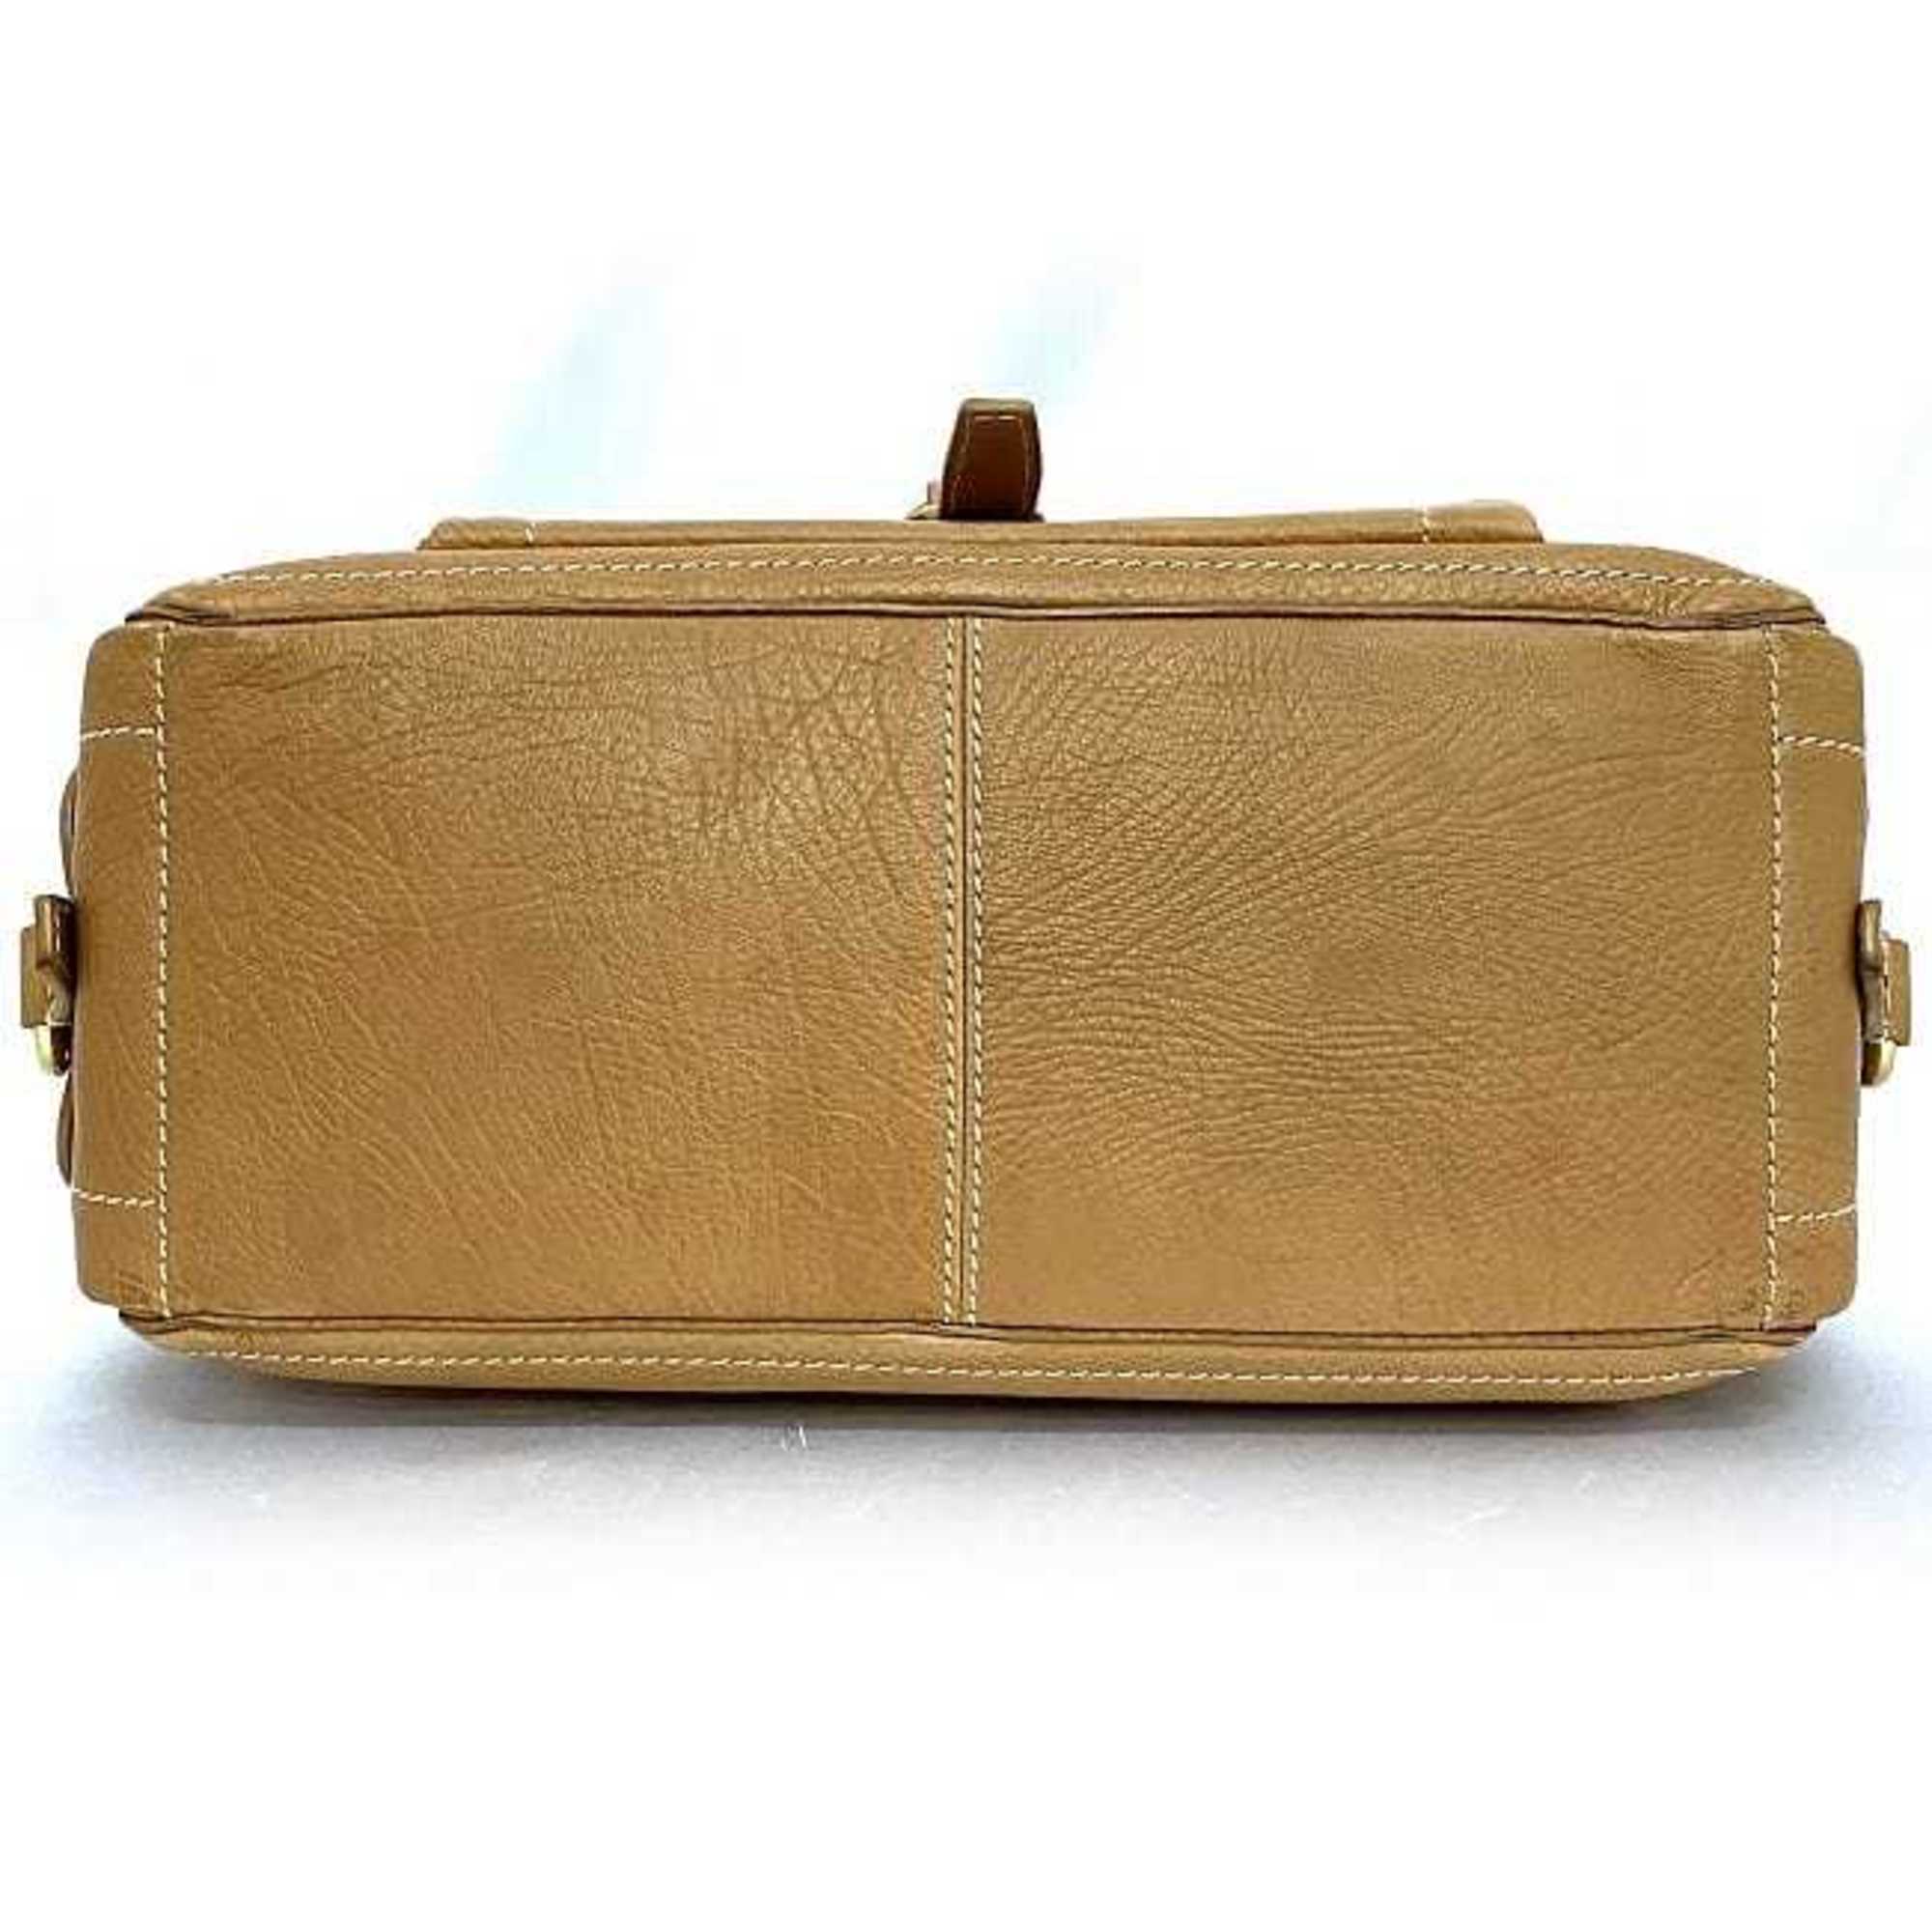 Celine Handbag Boogie Bag Beige ec-20552 Leather CELINE Pocket Stitch Tote Ladies